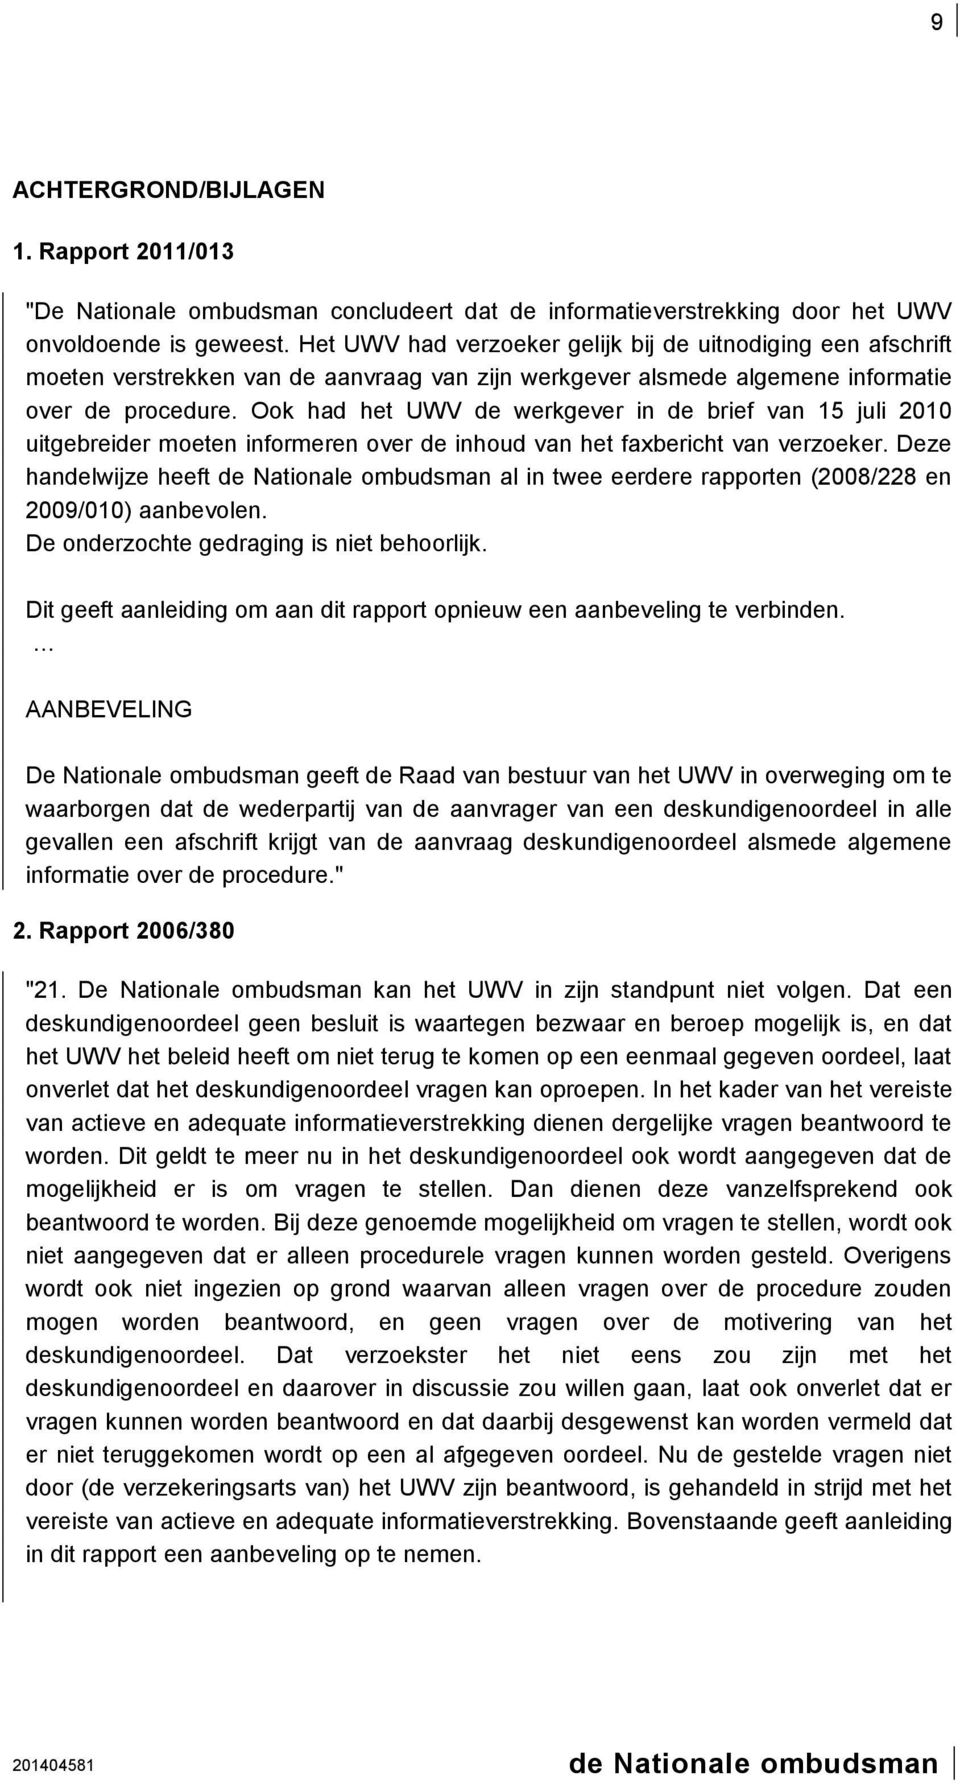 Ook had het UWV de werkgever in de brief van 15 juli 2010 uitgebreider moeten informeren over de inhoud van het faxbericht van verzoeker.